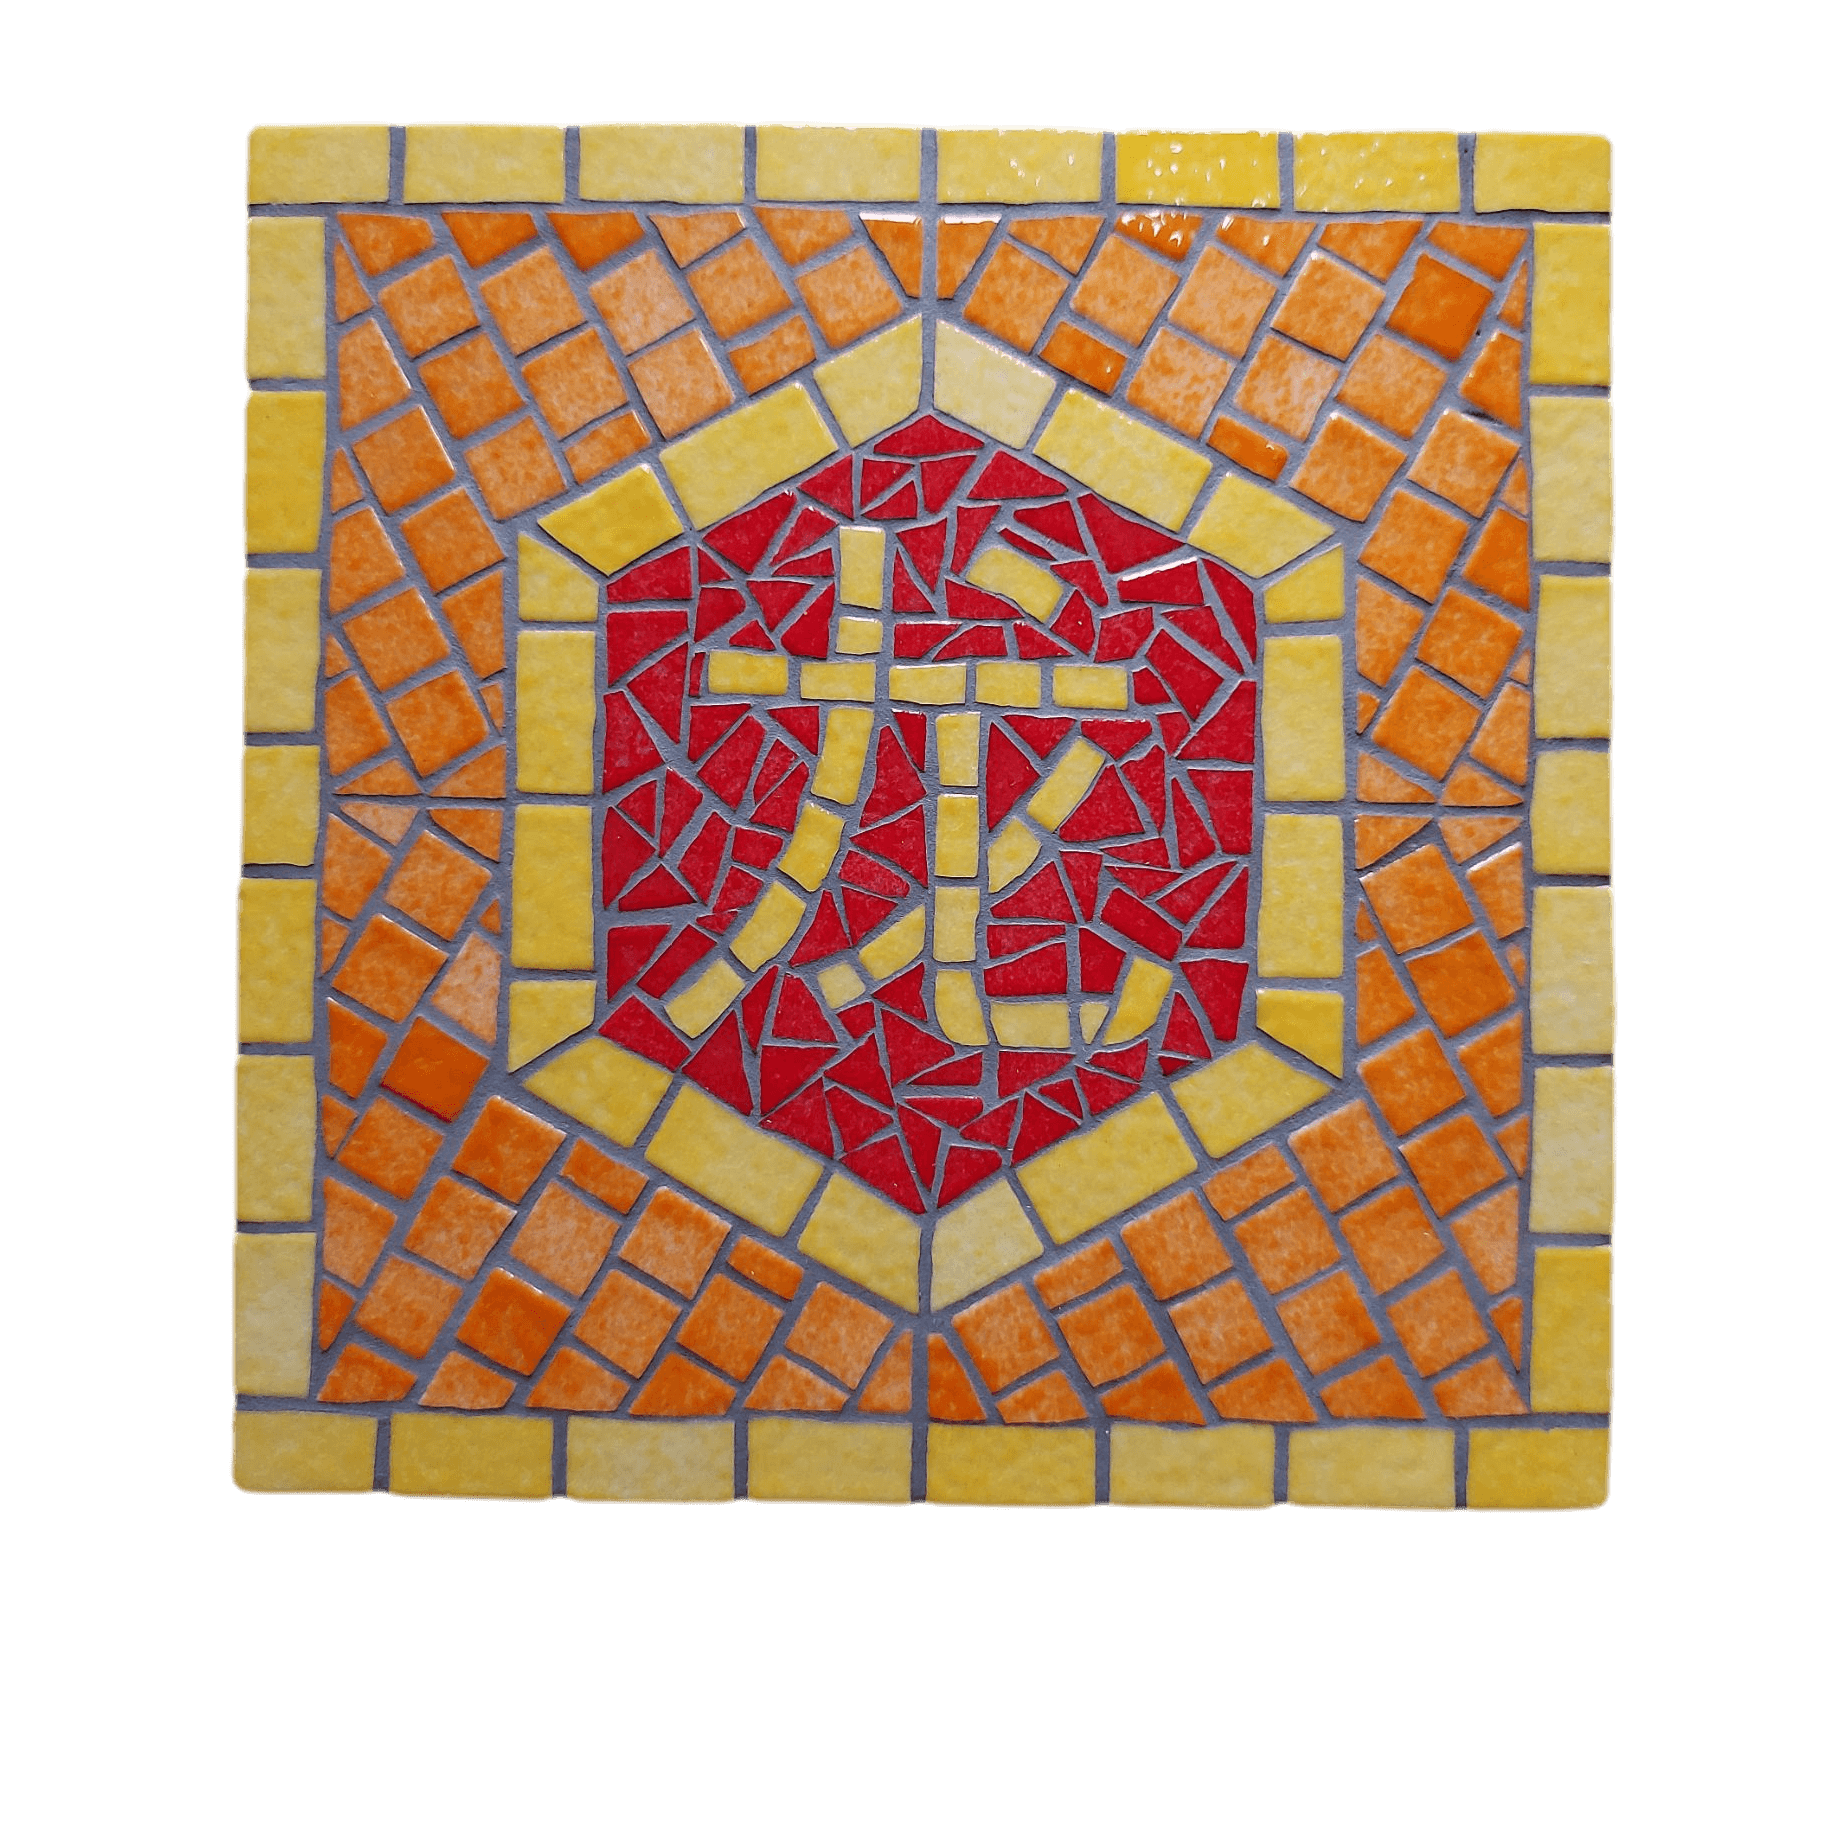 Tableau artisanal en mosaïque du zodiaque chinois, signe du Dragon, gamme jaune